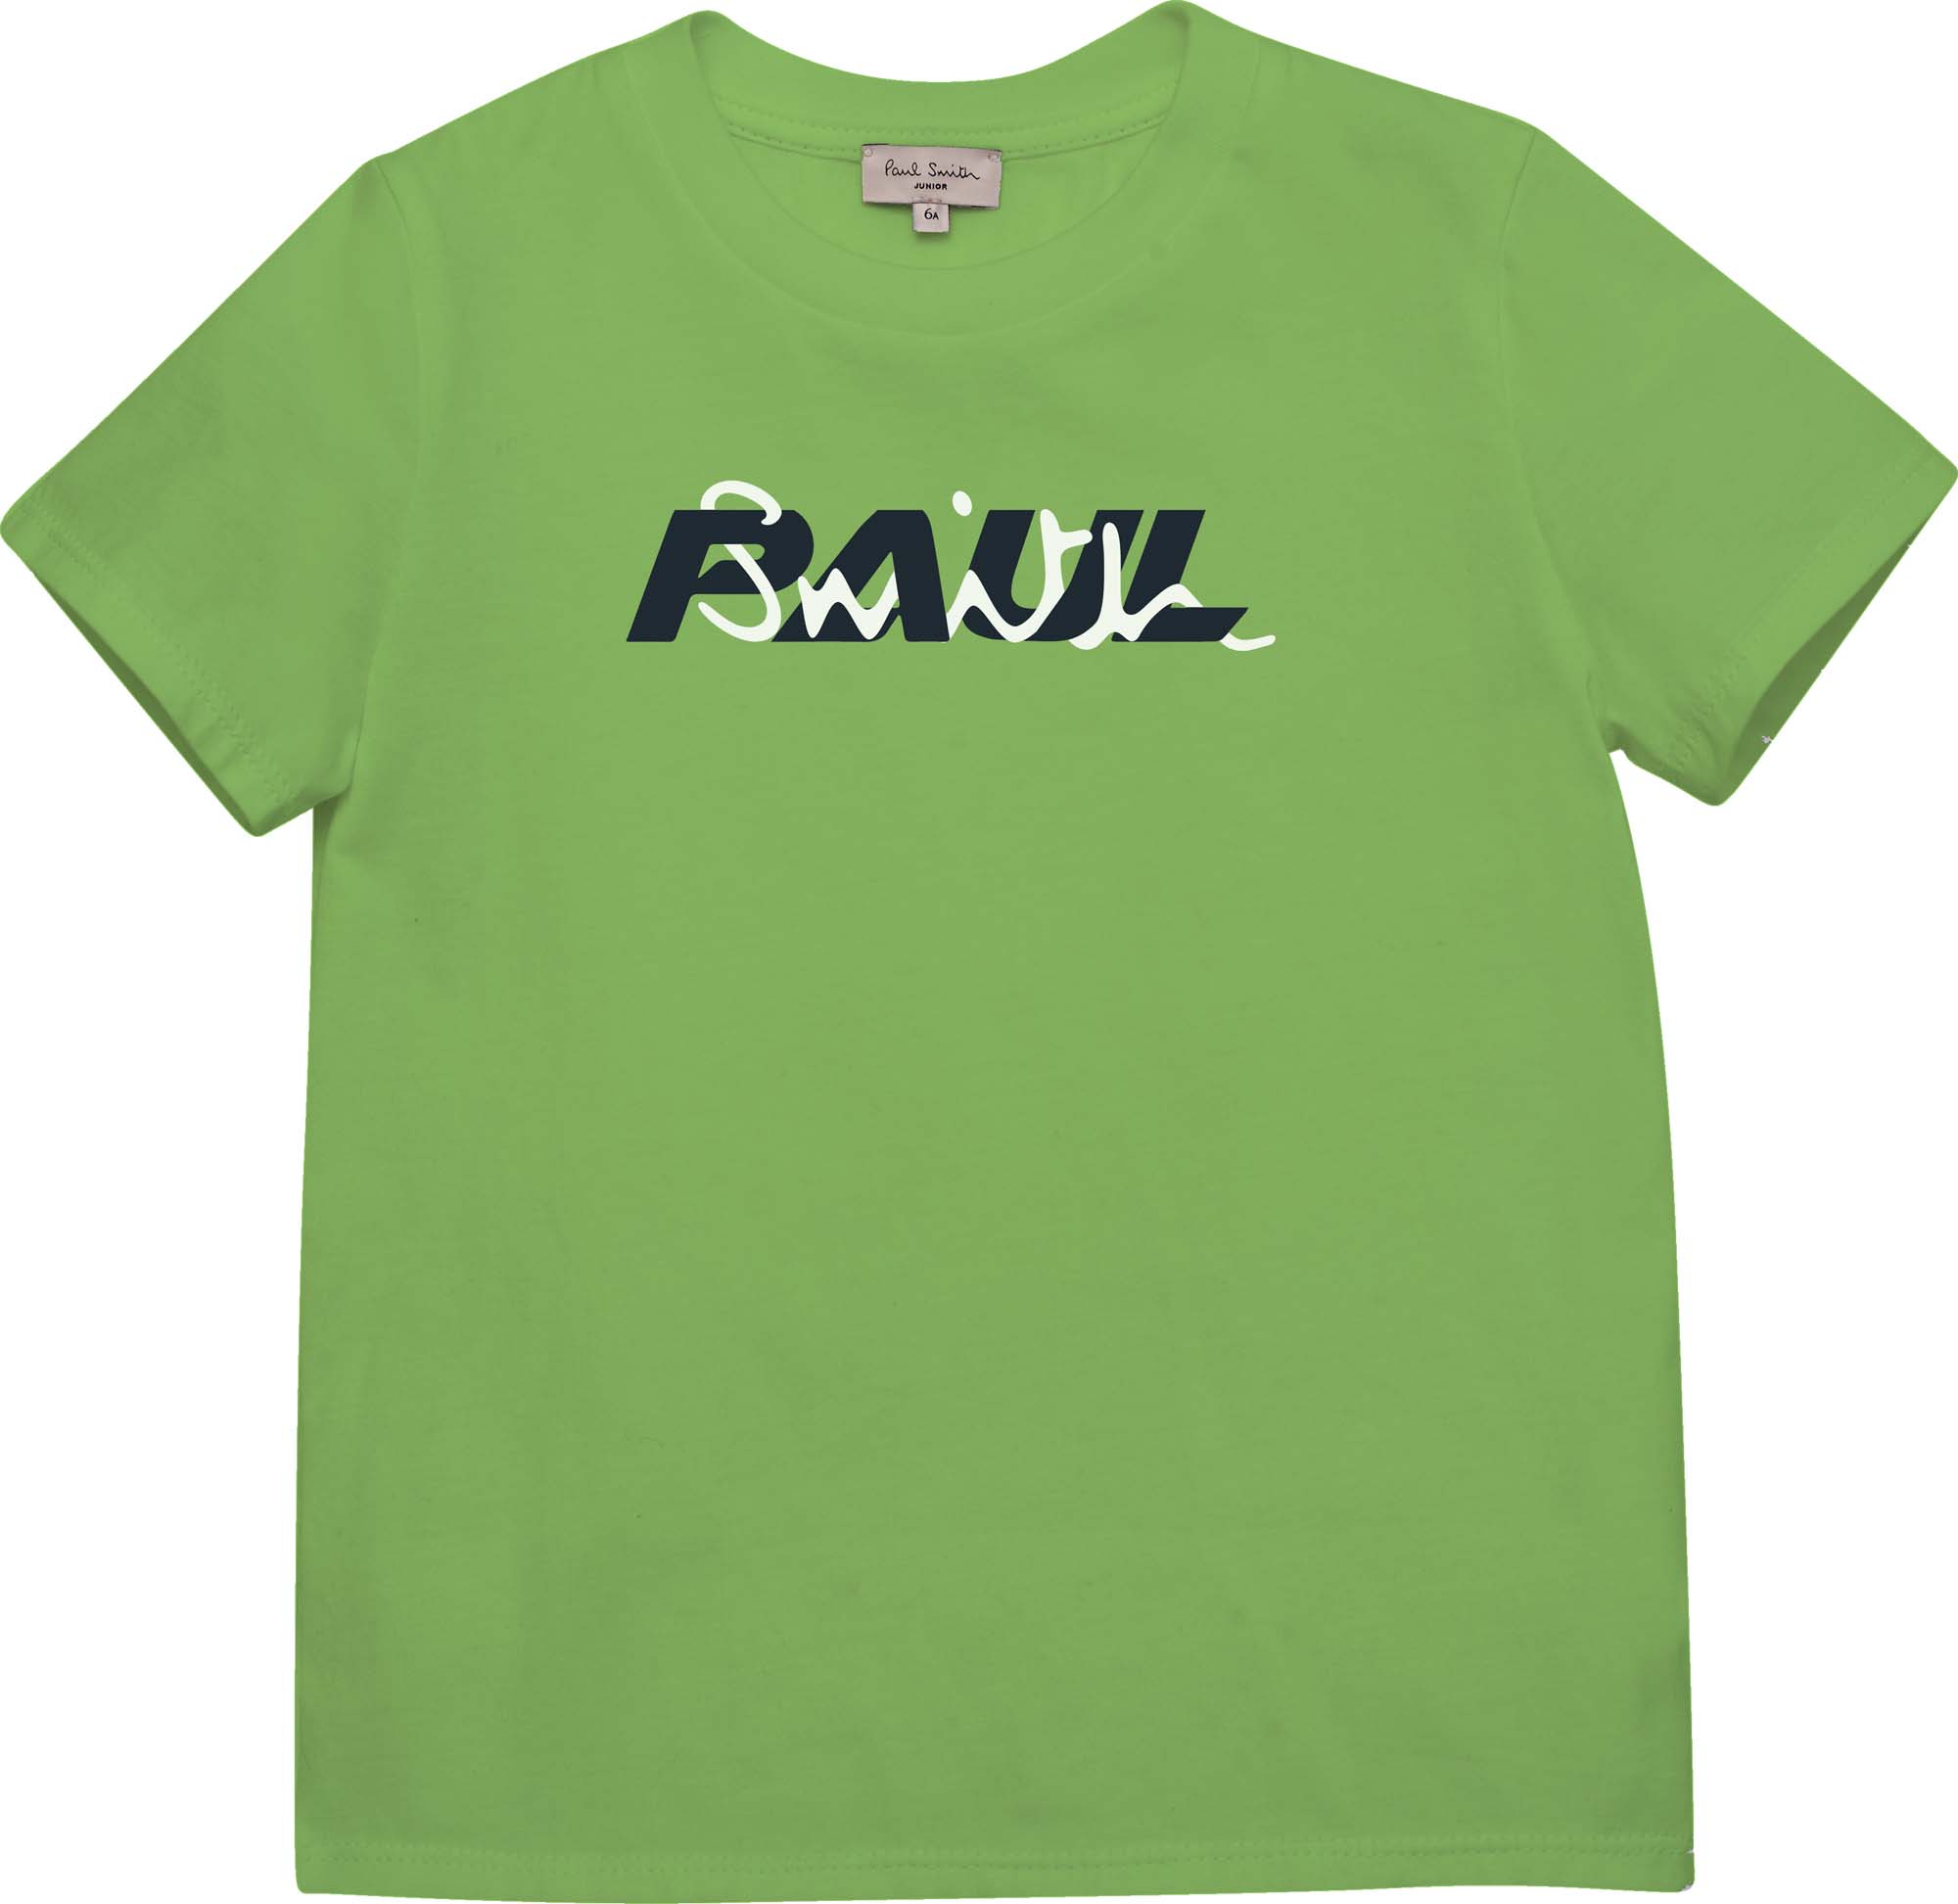 T-shirt in cotone bio PAUL SMITH JUNIOR Per RAGAZZO